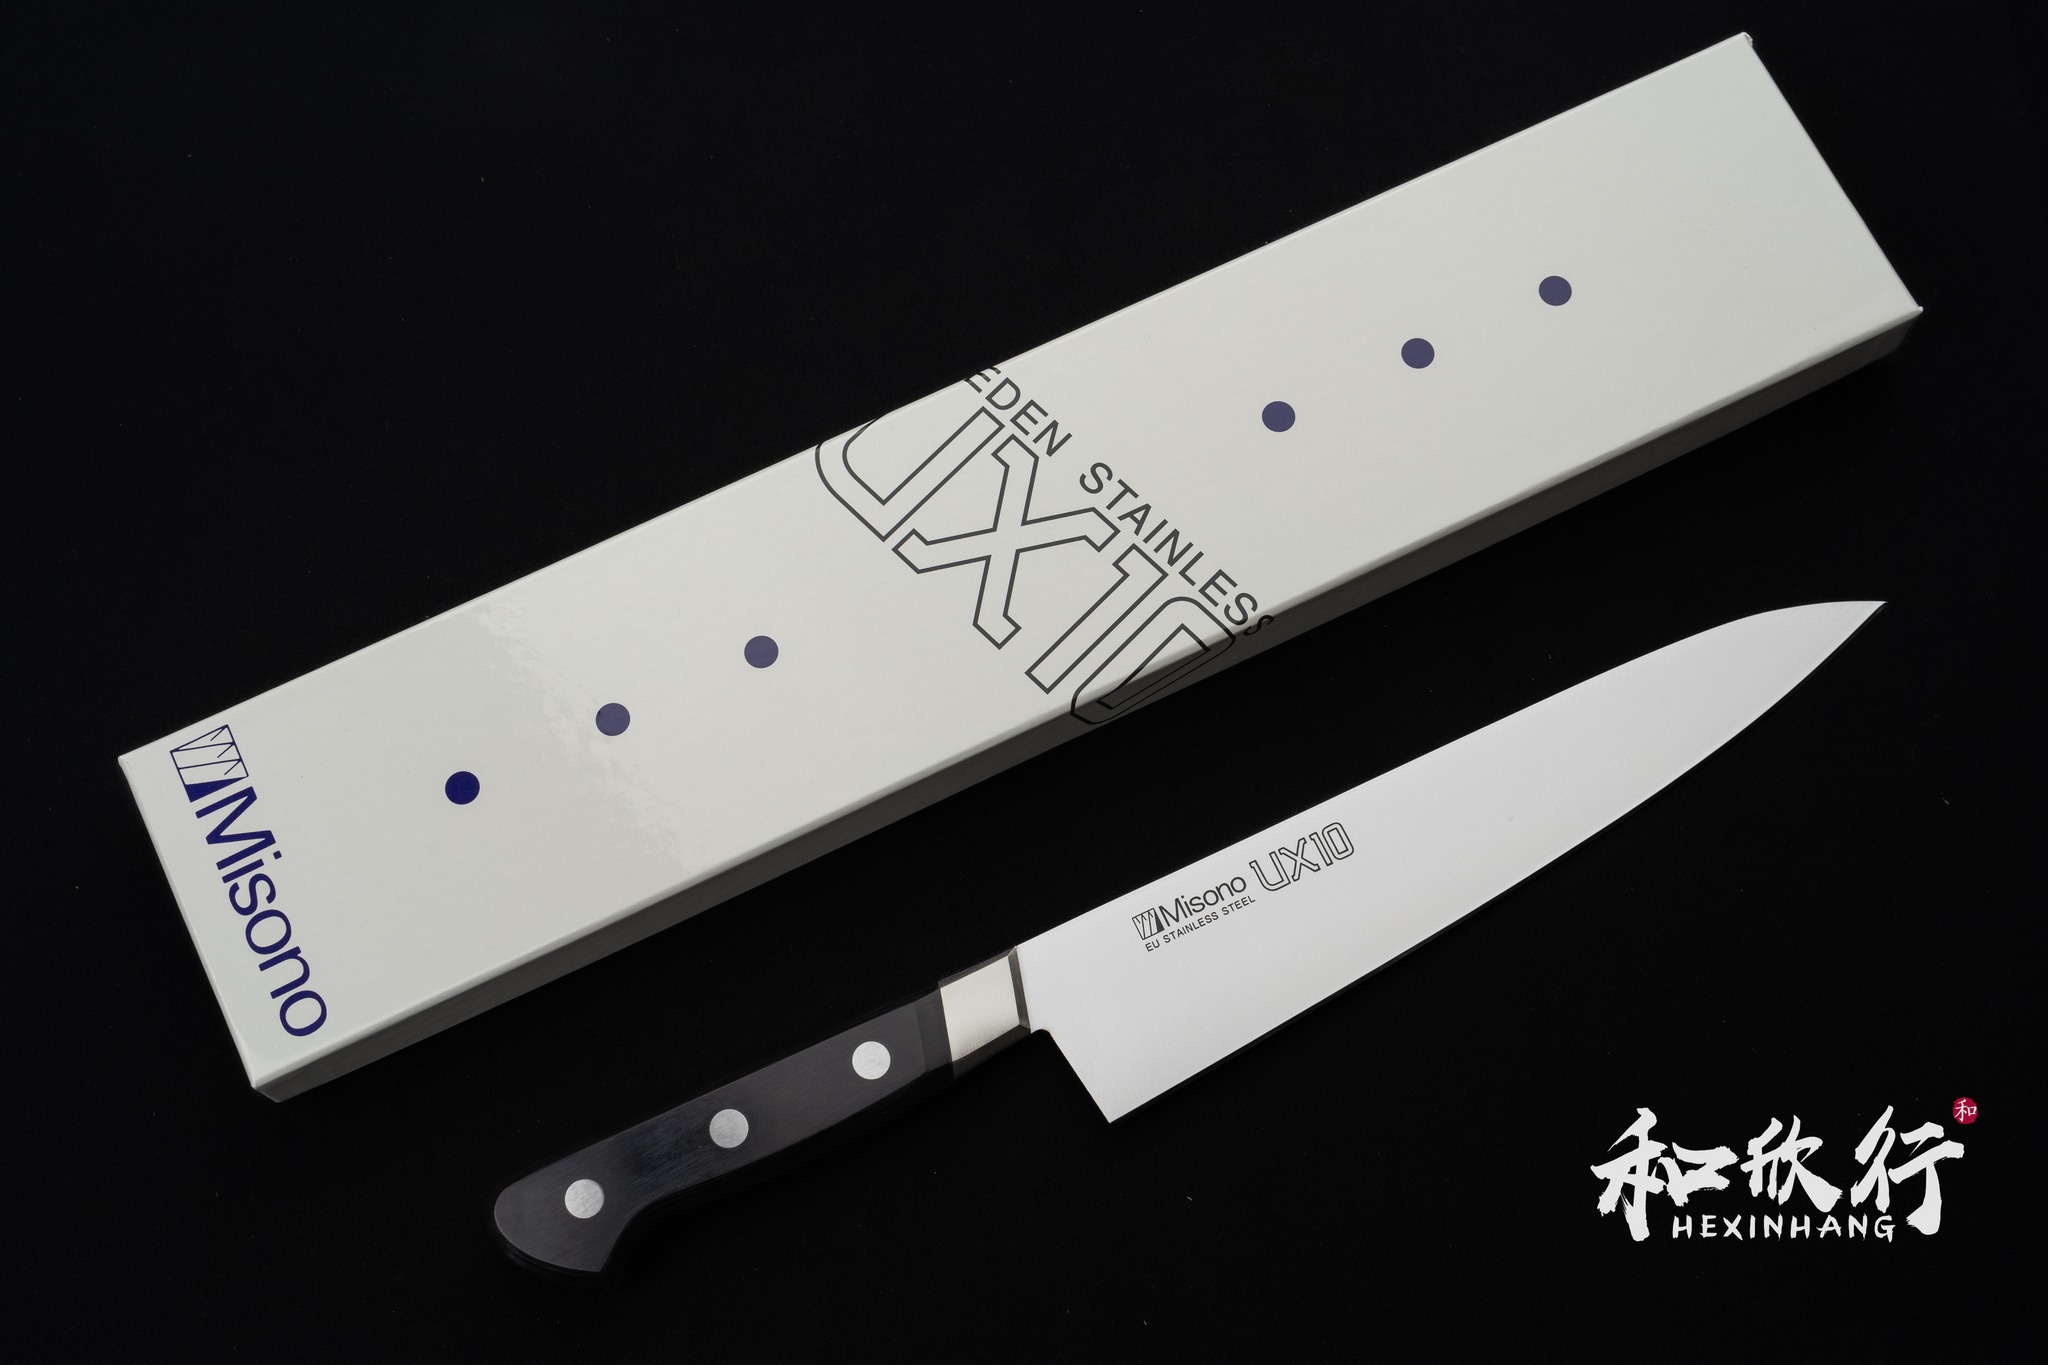 「和欣行」現貨、 Misono UX10 不鏽鋼 瑞典鋼 牛刀 系列